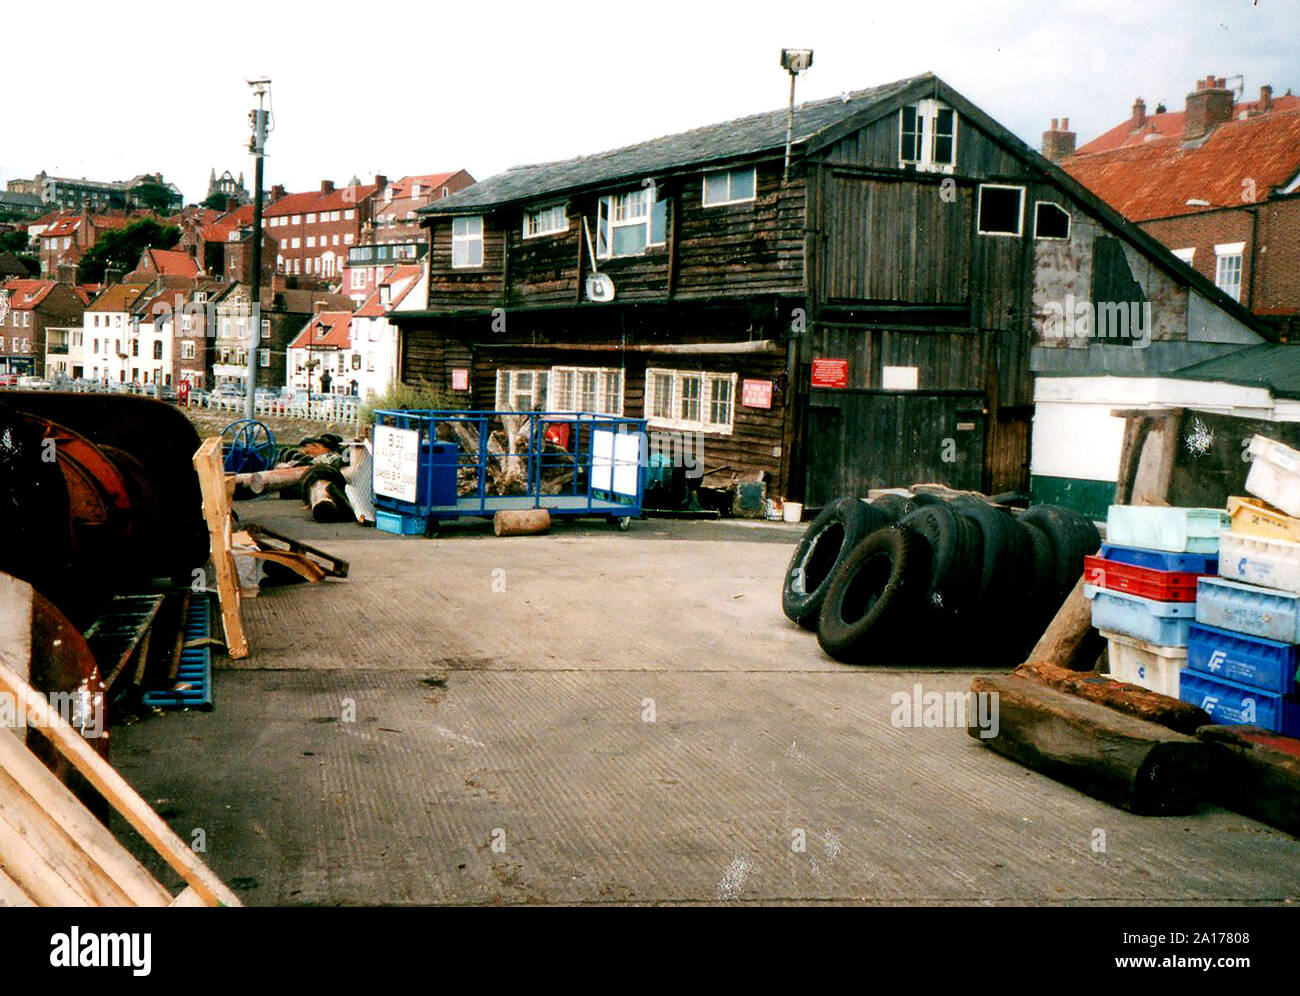 Une photographie vintage à Whitby, North Yorkshire, montrant le dernier de la ville historique d'harbourside en bois entrepôts sur le quai de la rue de l'Église, Whitby, dans le Yorkshire, UK., juste avant sa démolition. (Maintenant Whitby Shipyard) Banque D'Images